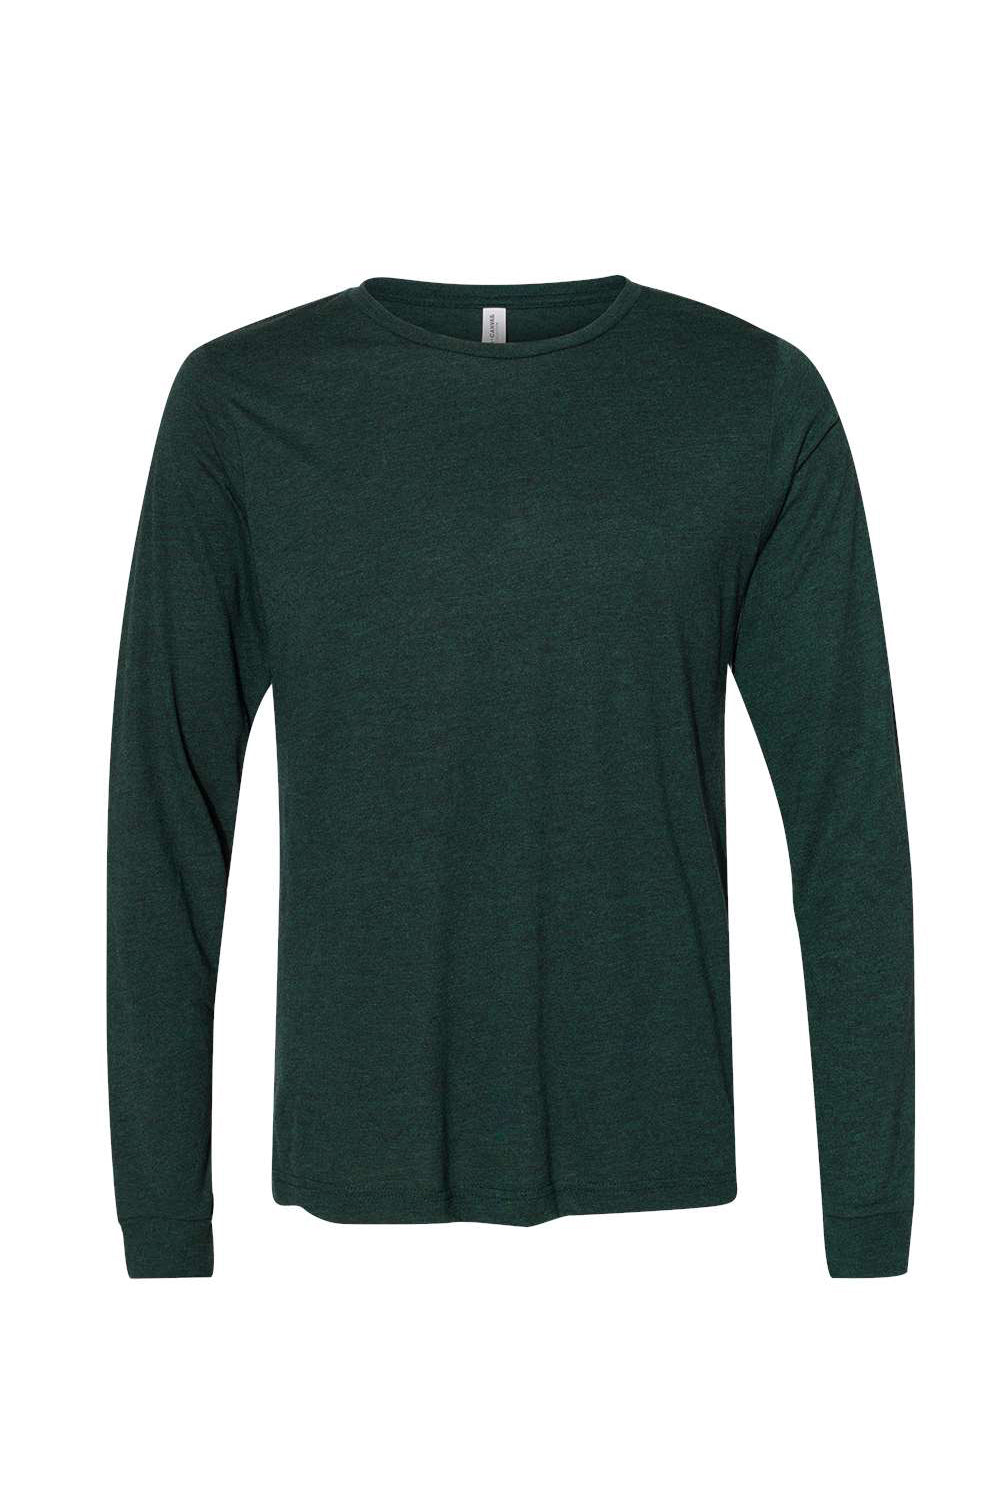 Bella + Canvas BC3513 Mens Long Sleeve Crewneck T-Shirt Emerald Green Flat Front